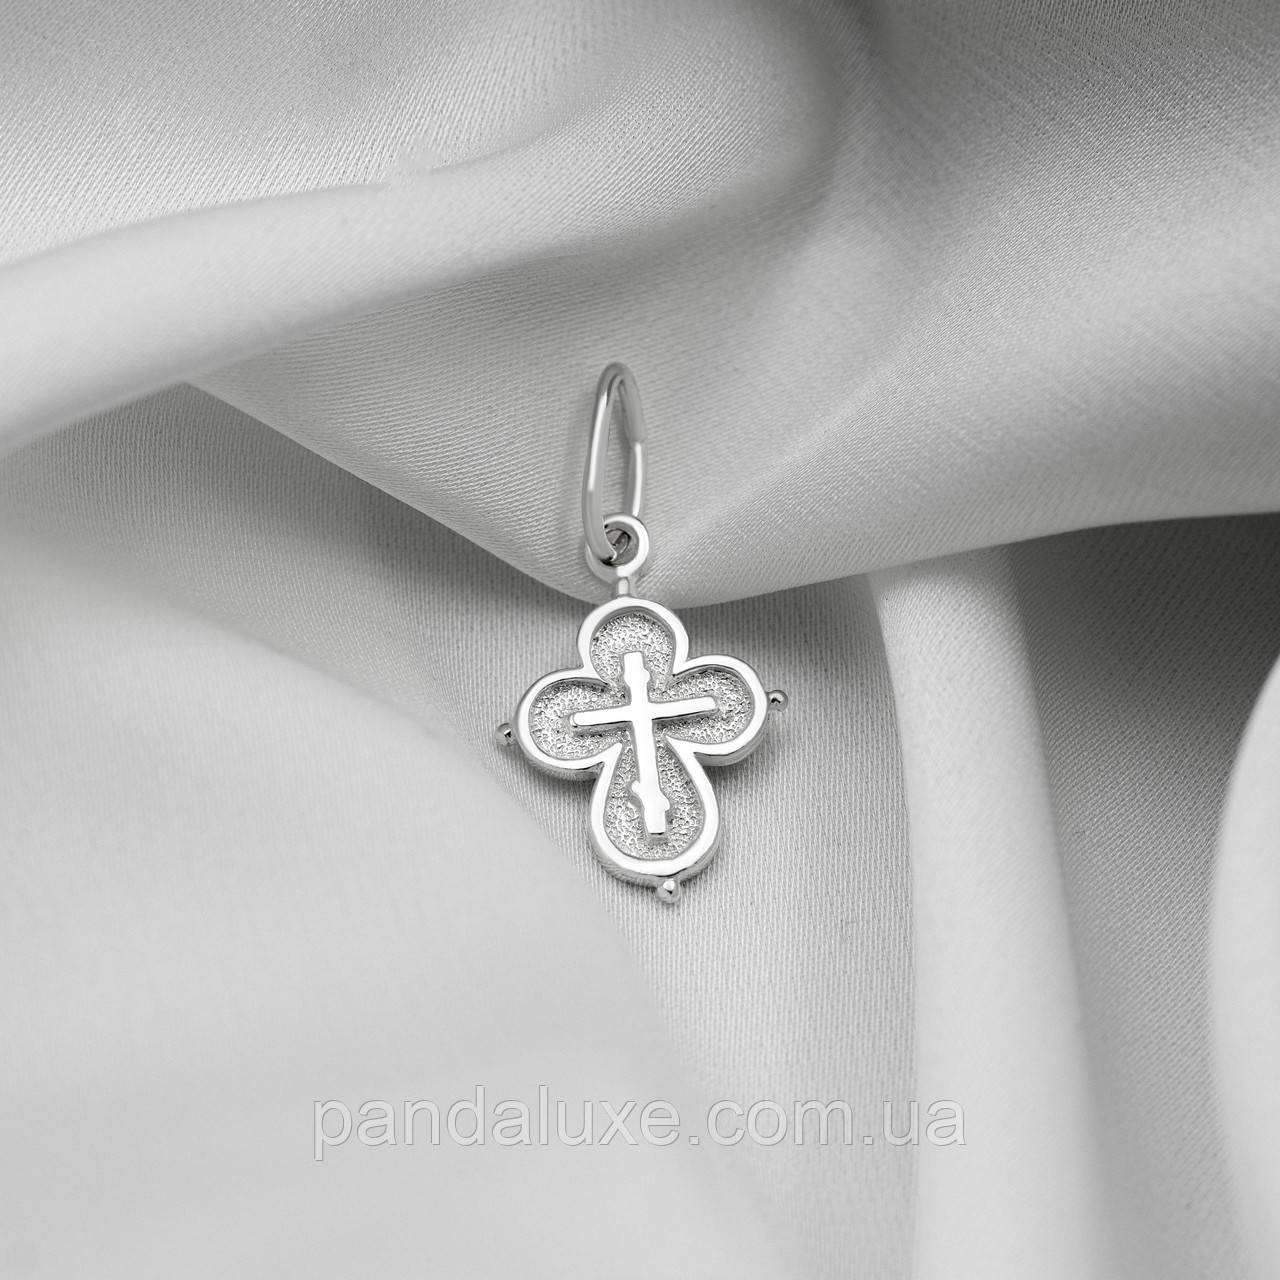 Срібний хрестик православний підвіс невеликий хрест зі срібла 925 проби підвіска